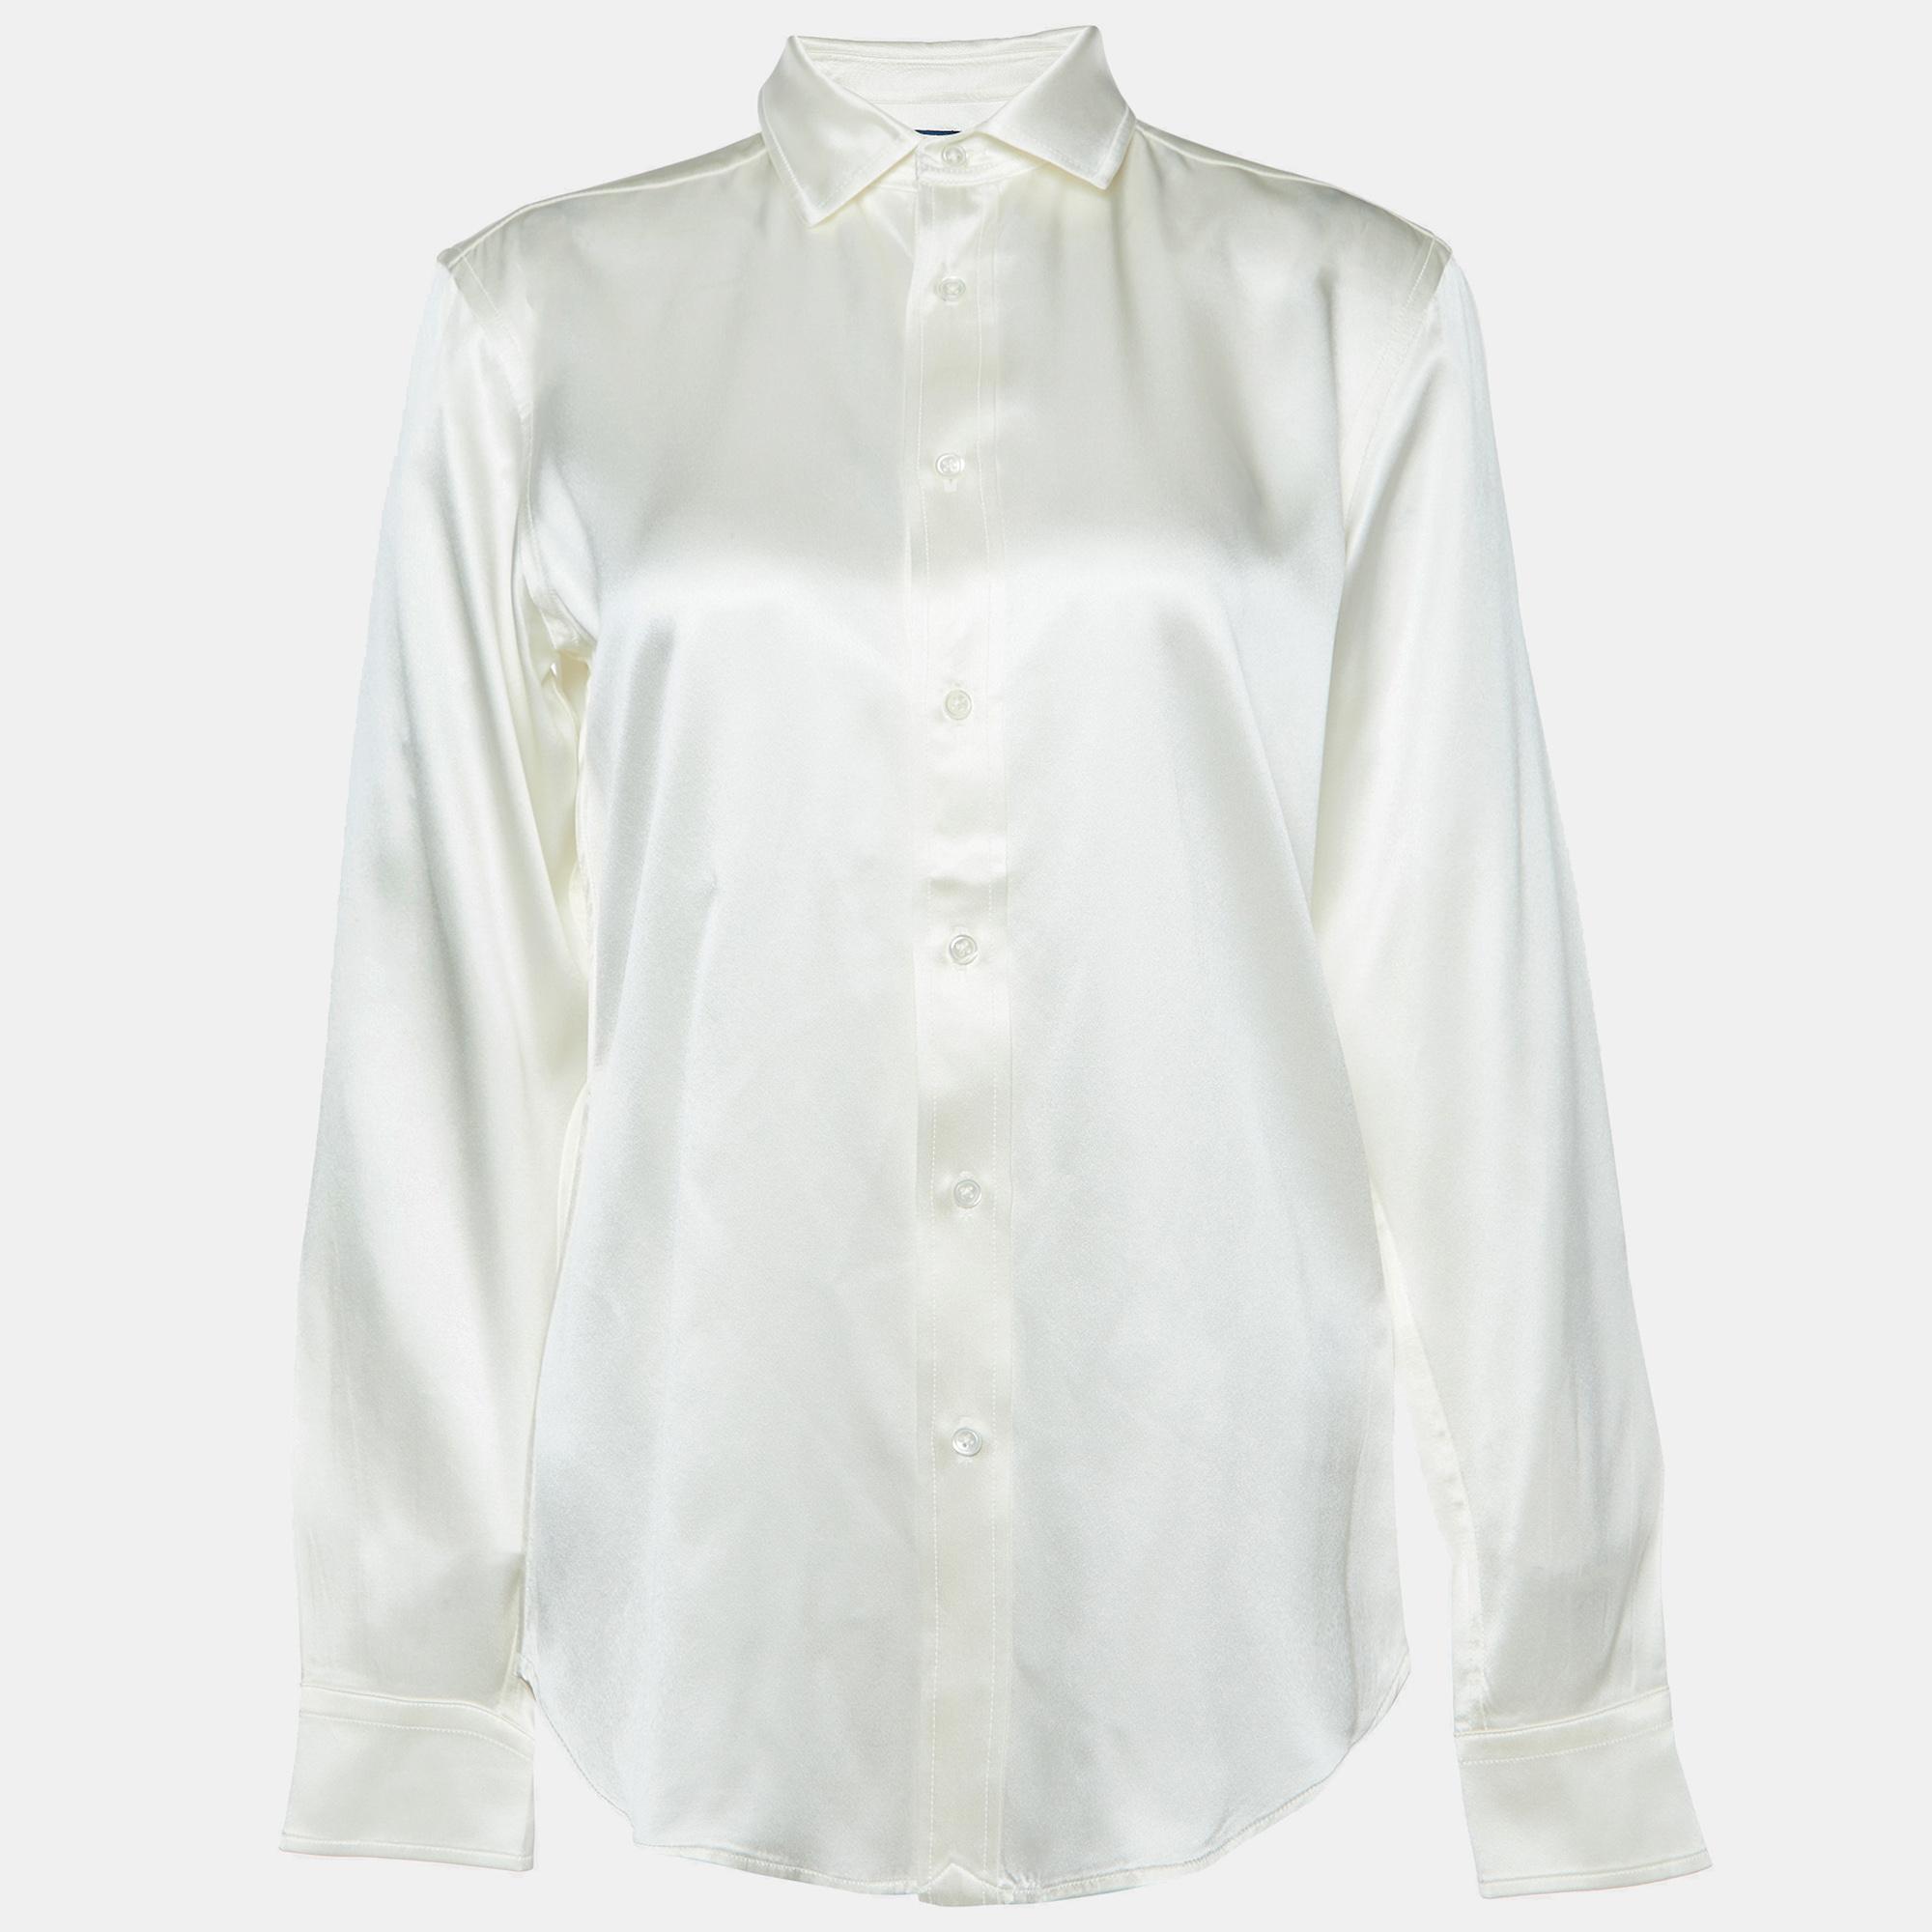 Polo ralph lauren cream silk satin buttoned up shirt s